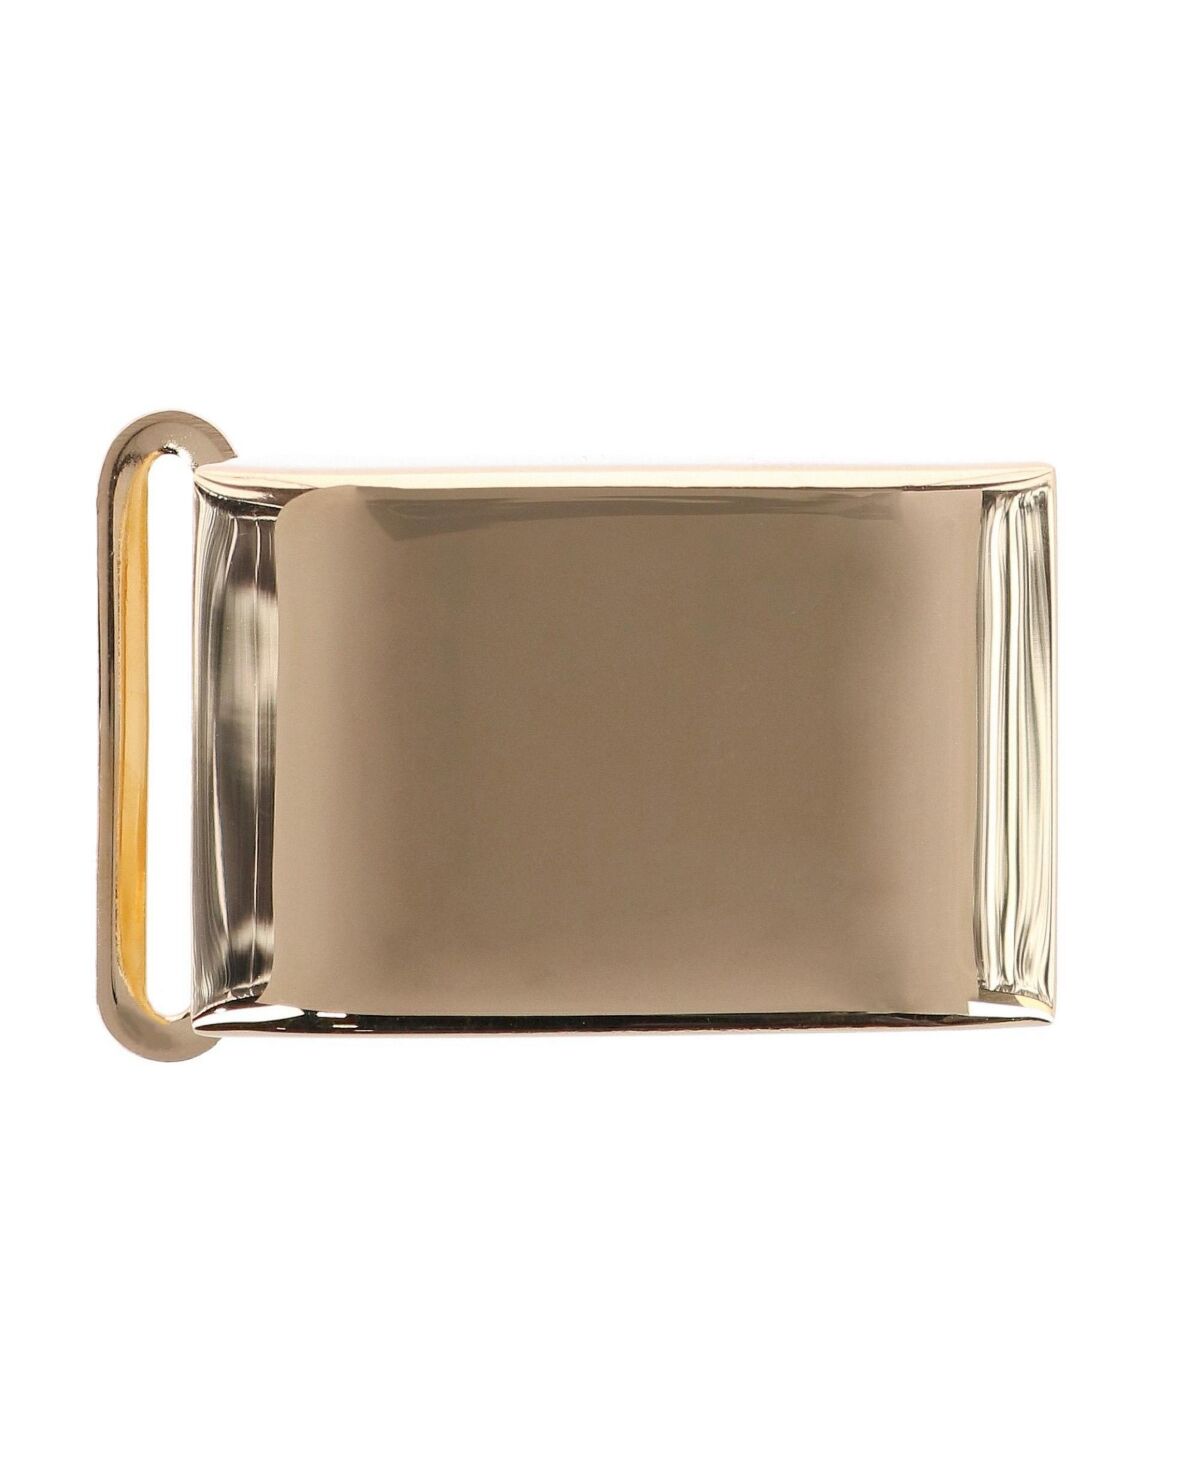 Trafalgar Men's 25mm Smooth Polished Finish Compression Belt Buckle - Polished gold